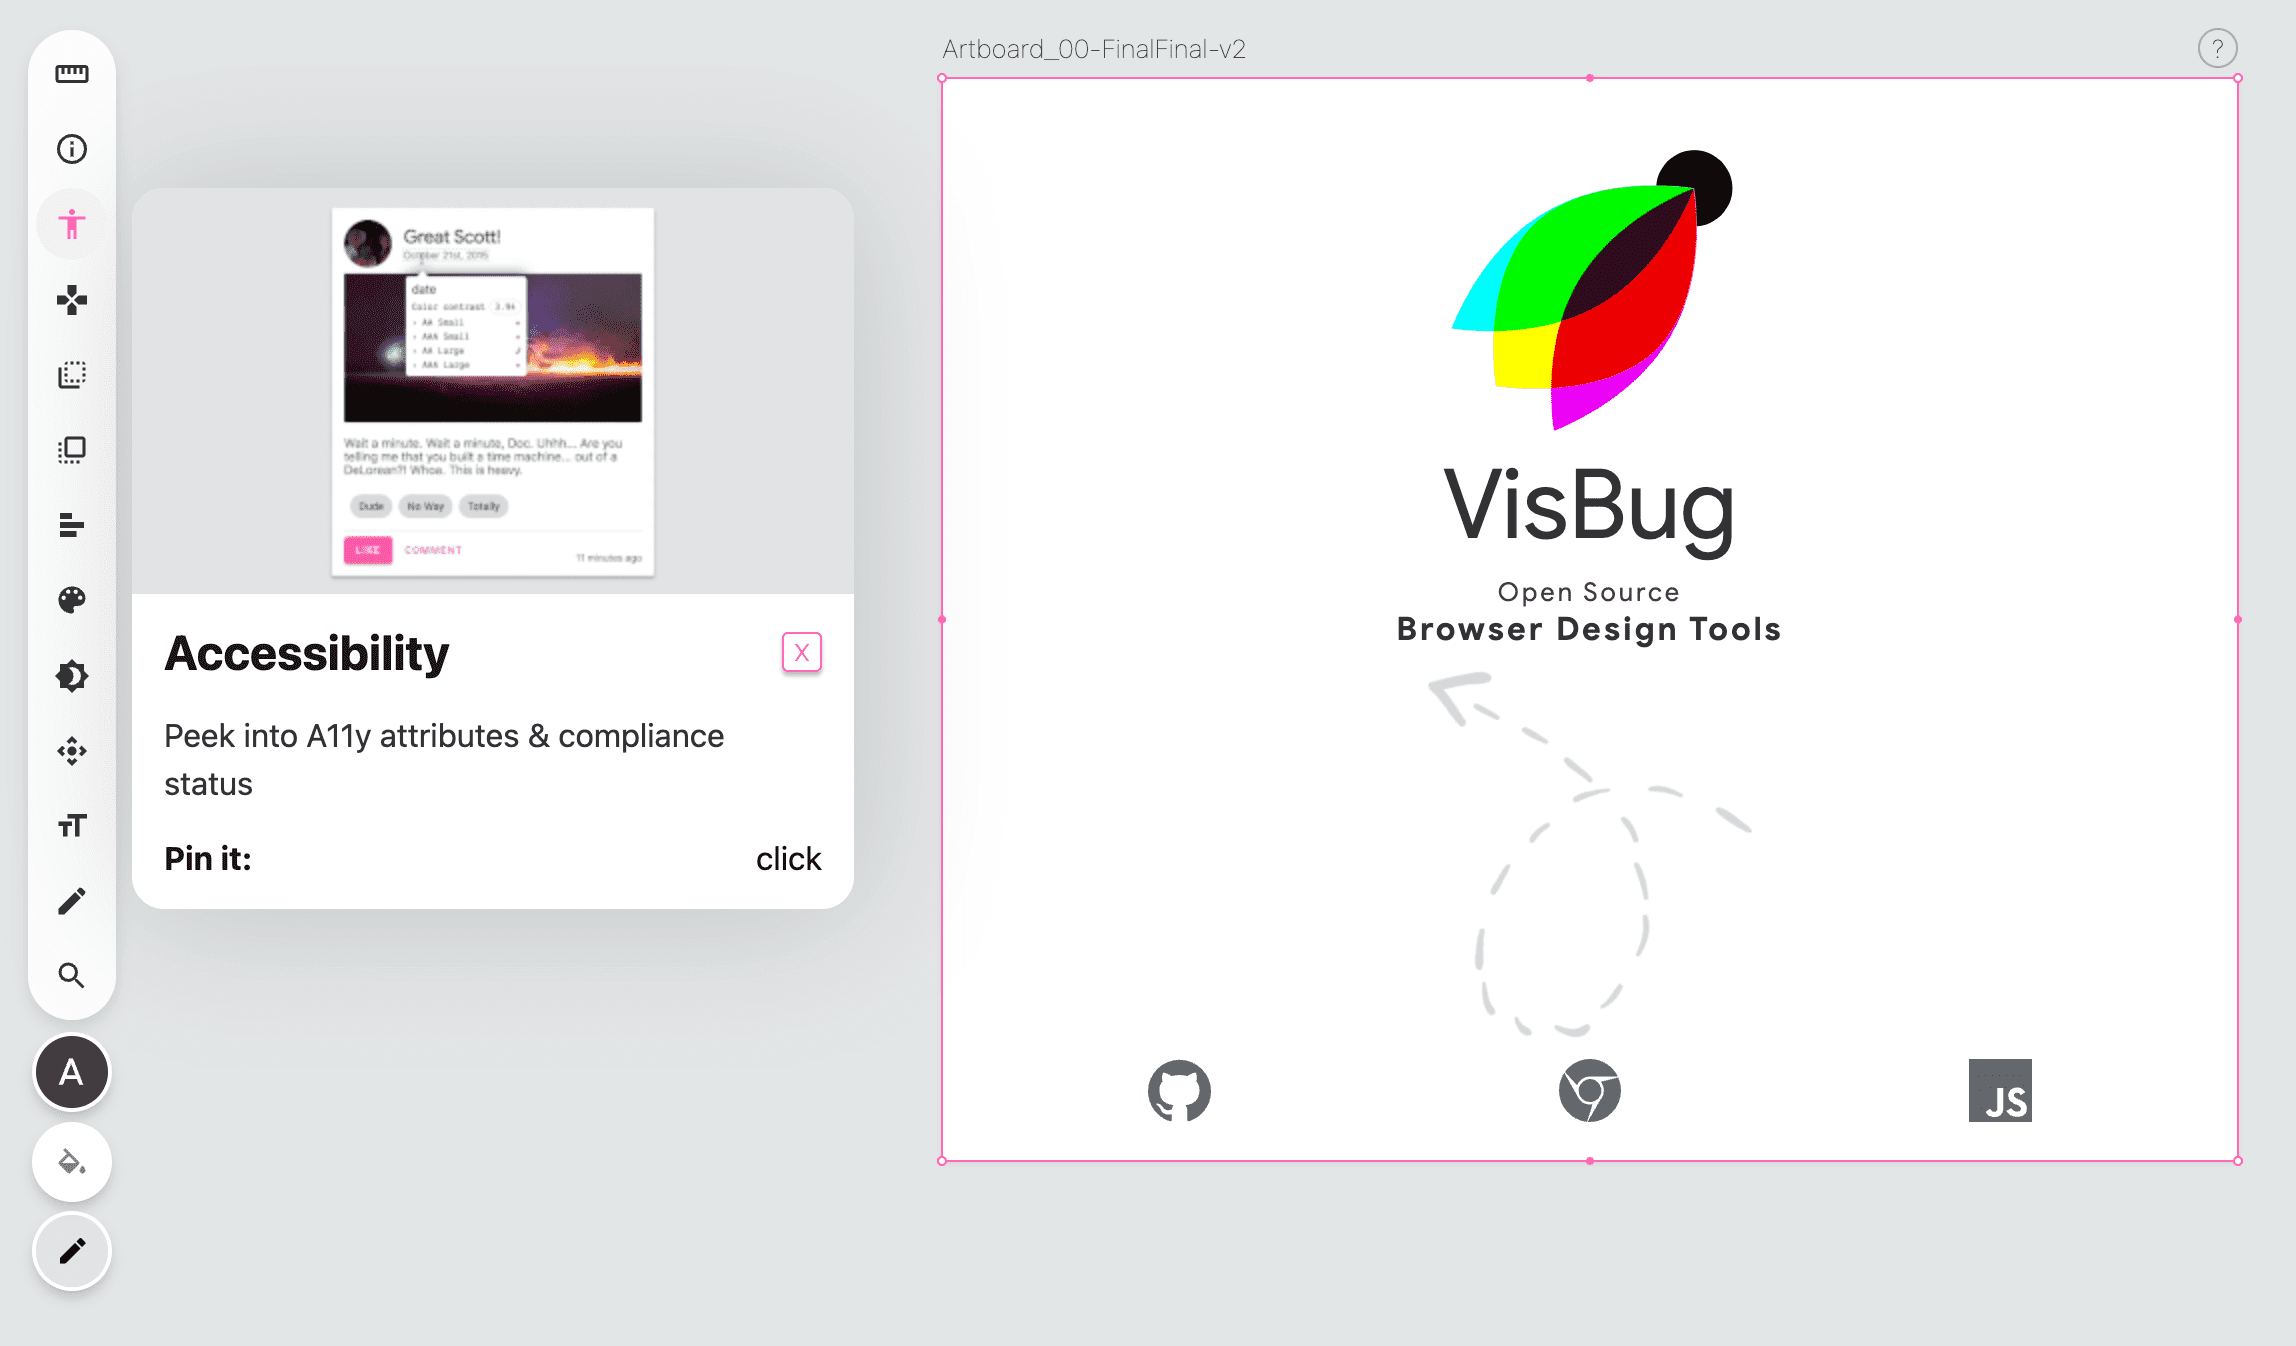 Captura de pantalla de la barra de herramientas de VisBug en el lado izquierdo de una página en blanco, el ícono de la herramienta de accesibilidad es rosa y se muestra una ventana emergente que indica las instrucciones de la herramienta.